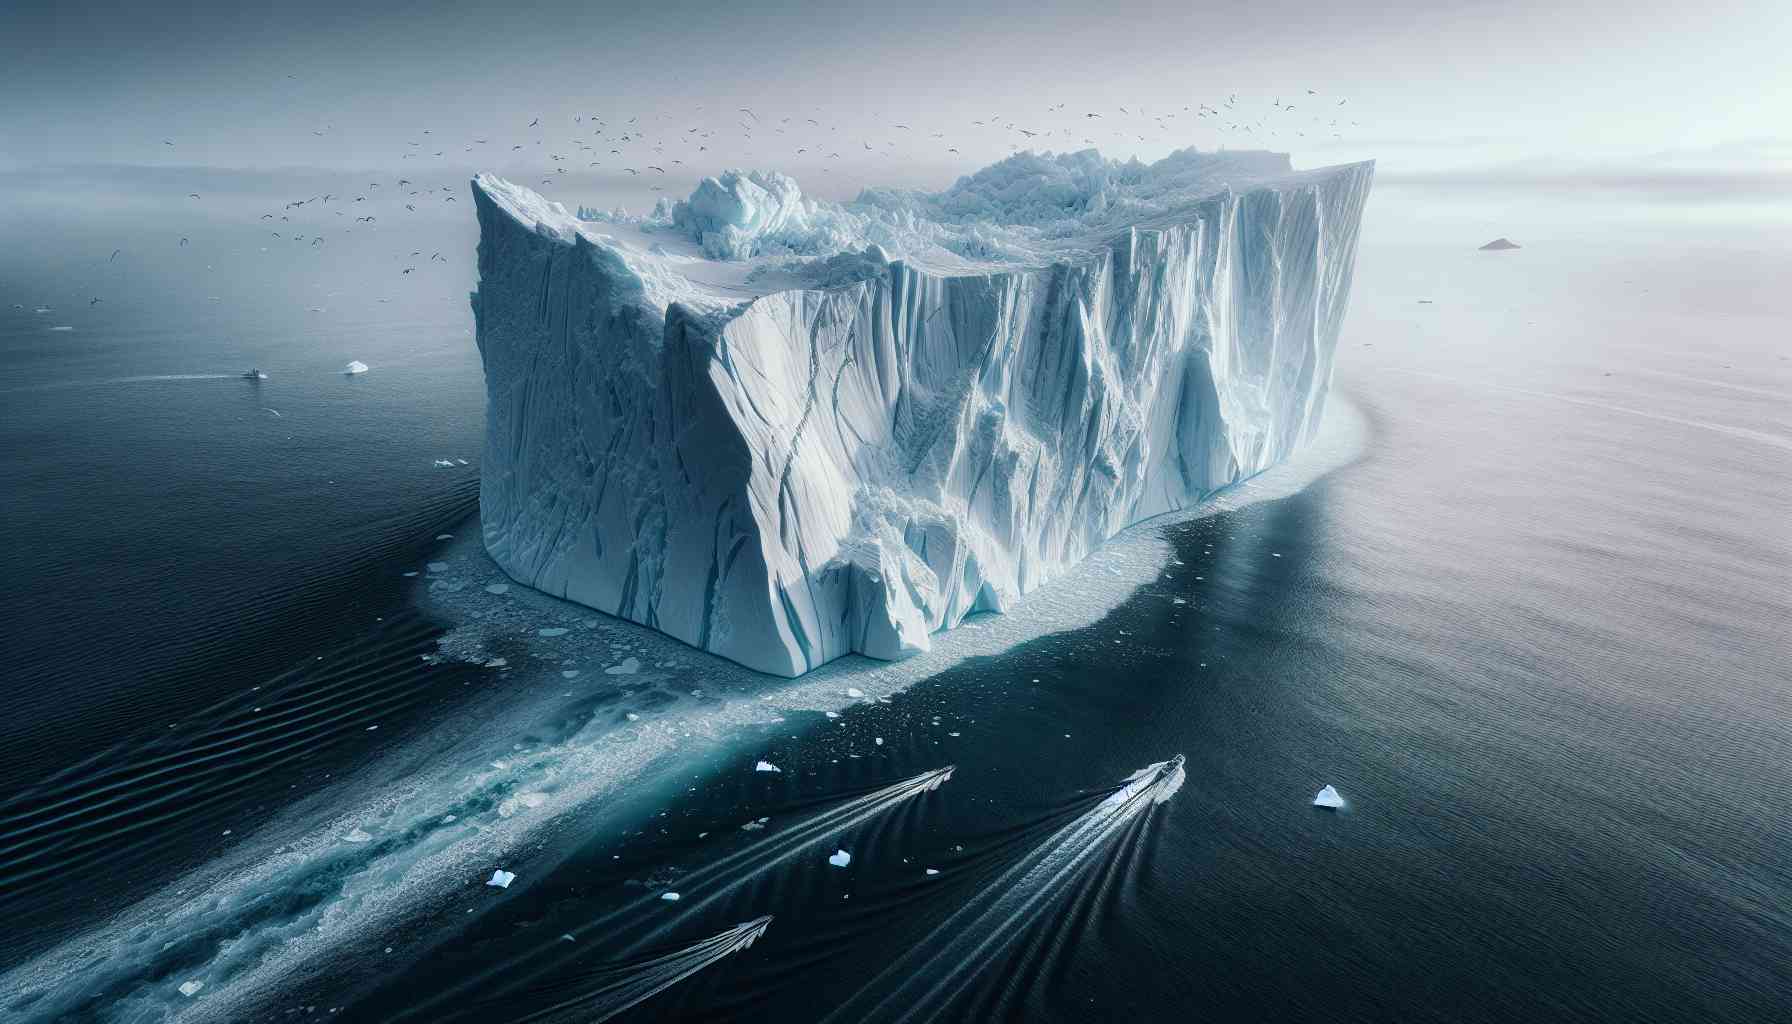 Tảng băng trôi A23a là tảng băng lớn nhất thế giới với diện tích 4.000 km2. Ảnh: TS2.space